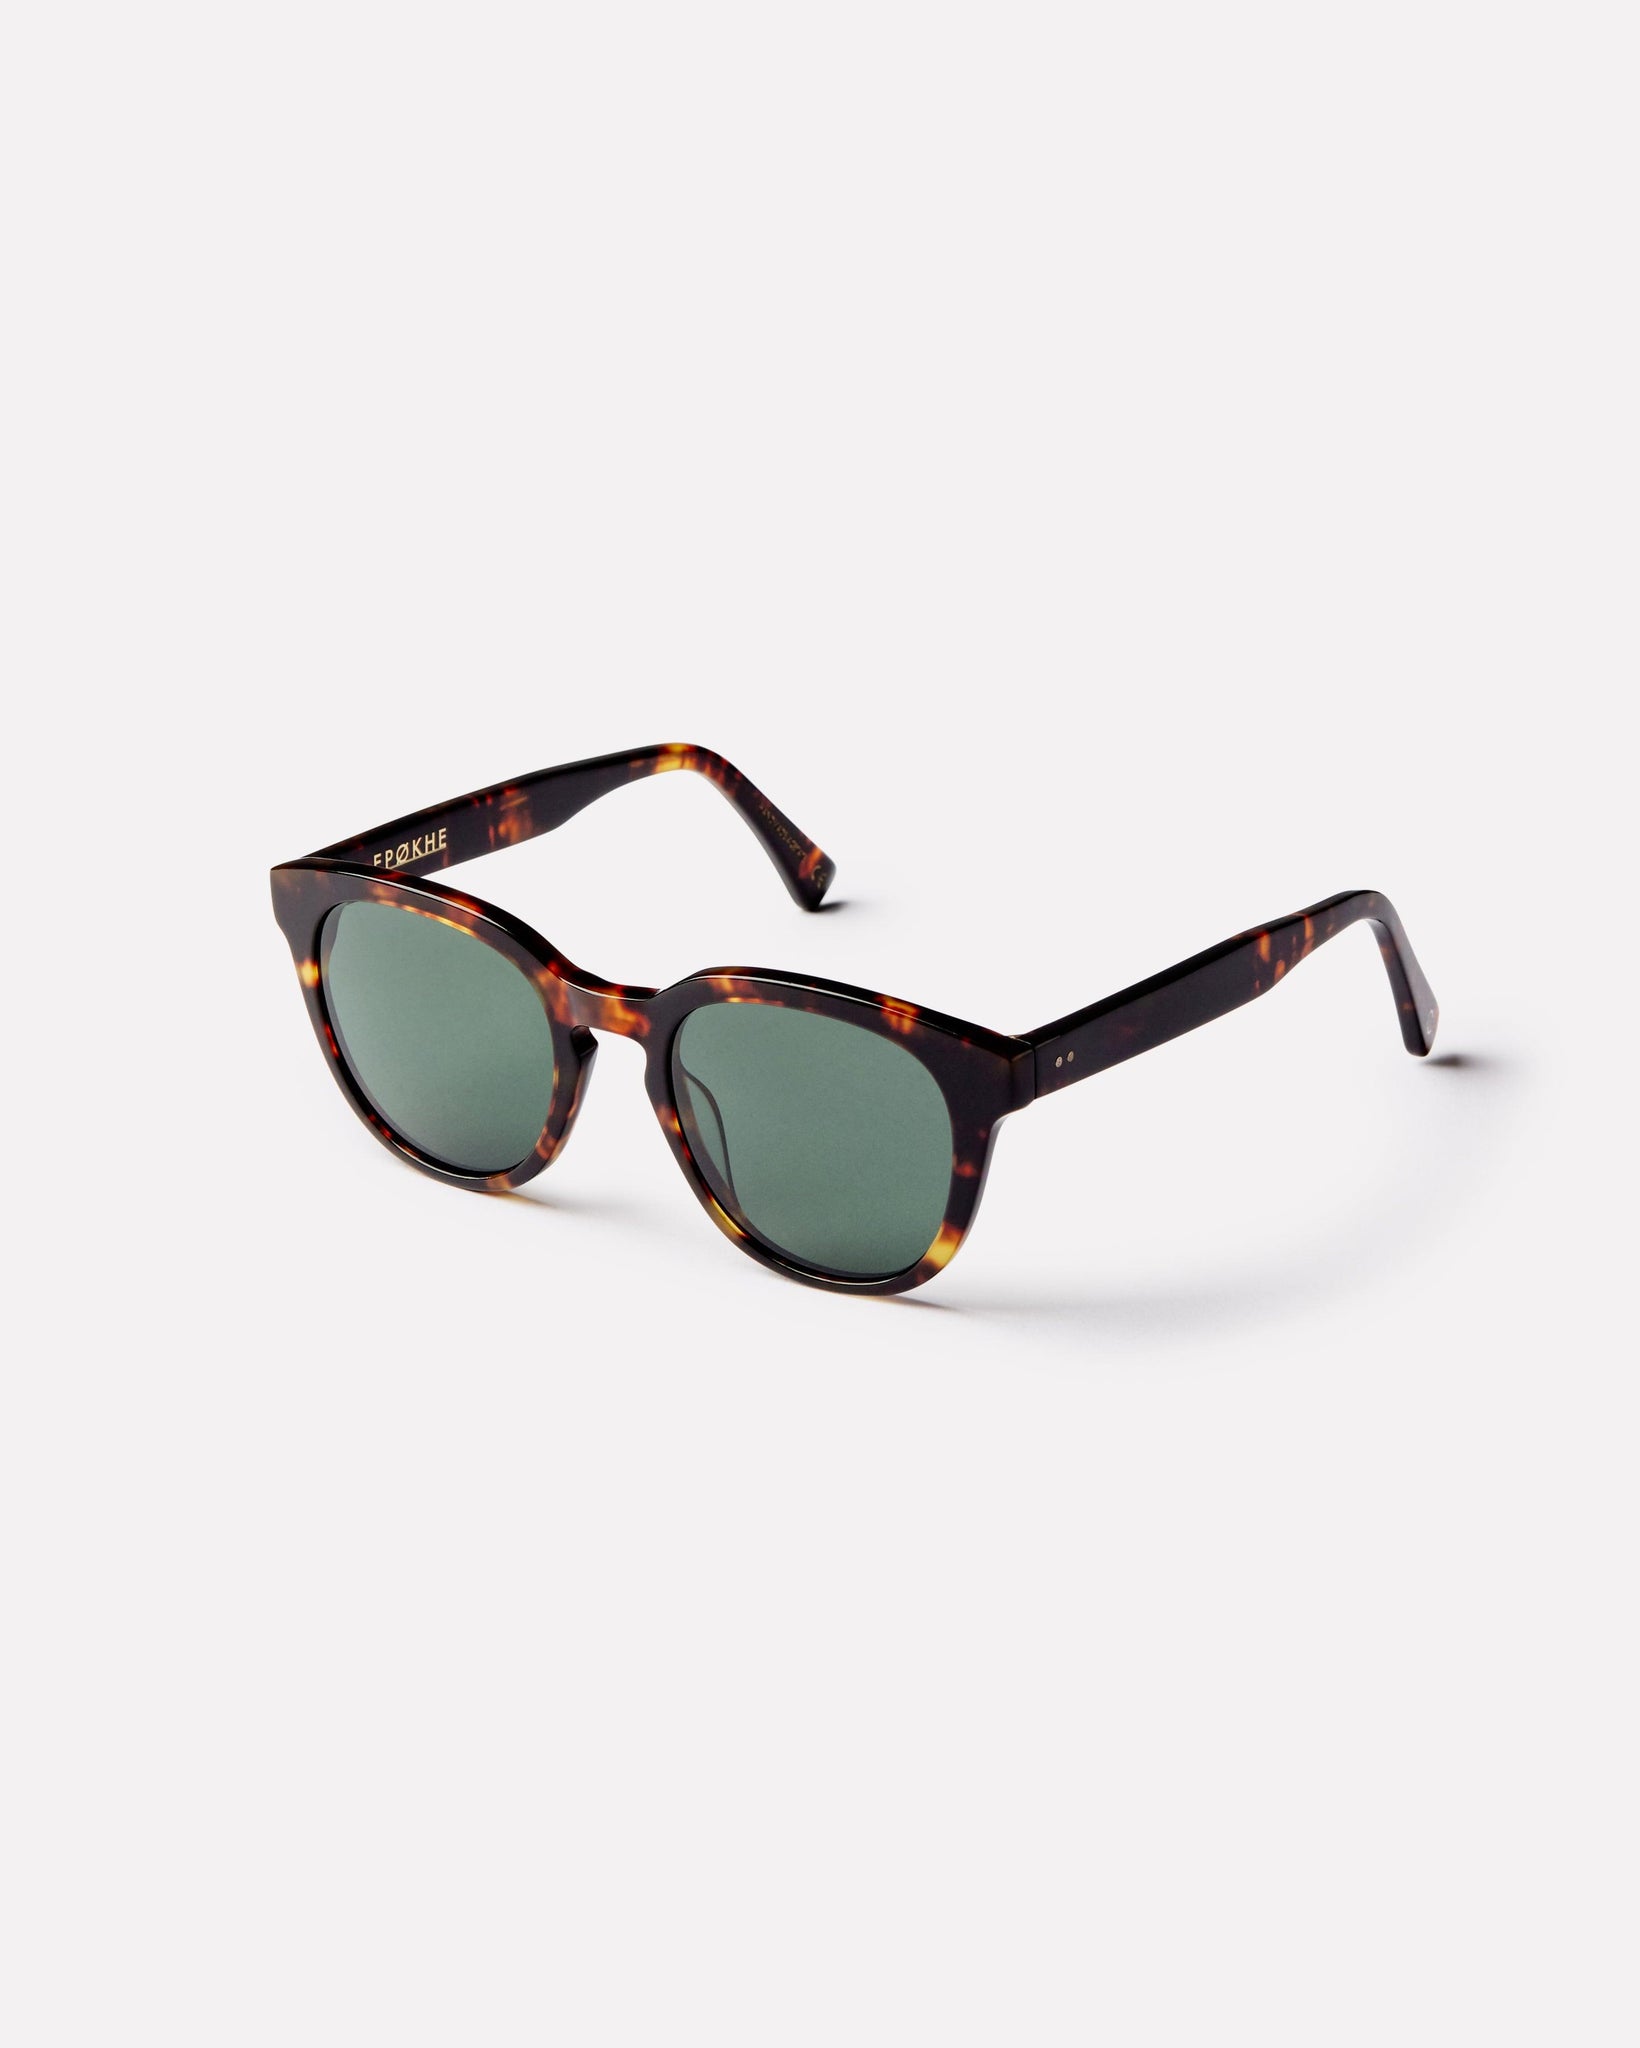 Anteka 2.0 - Tortoise Polished / Green Polarized - Sunglasses - EPOKHE EYEWEAR